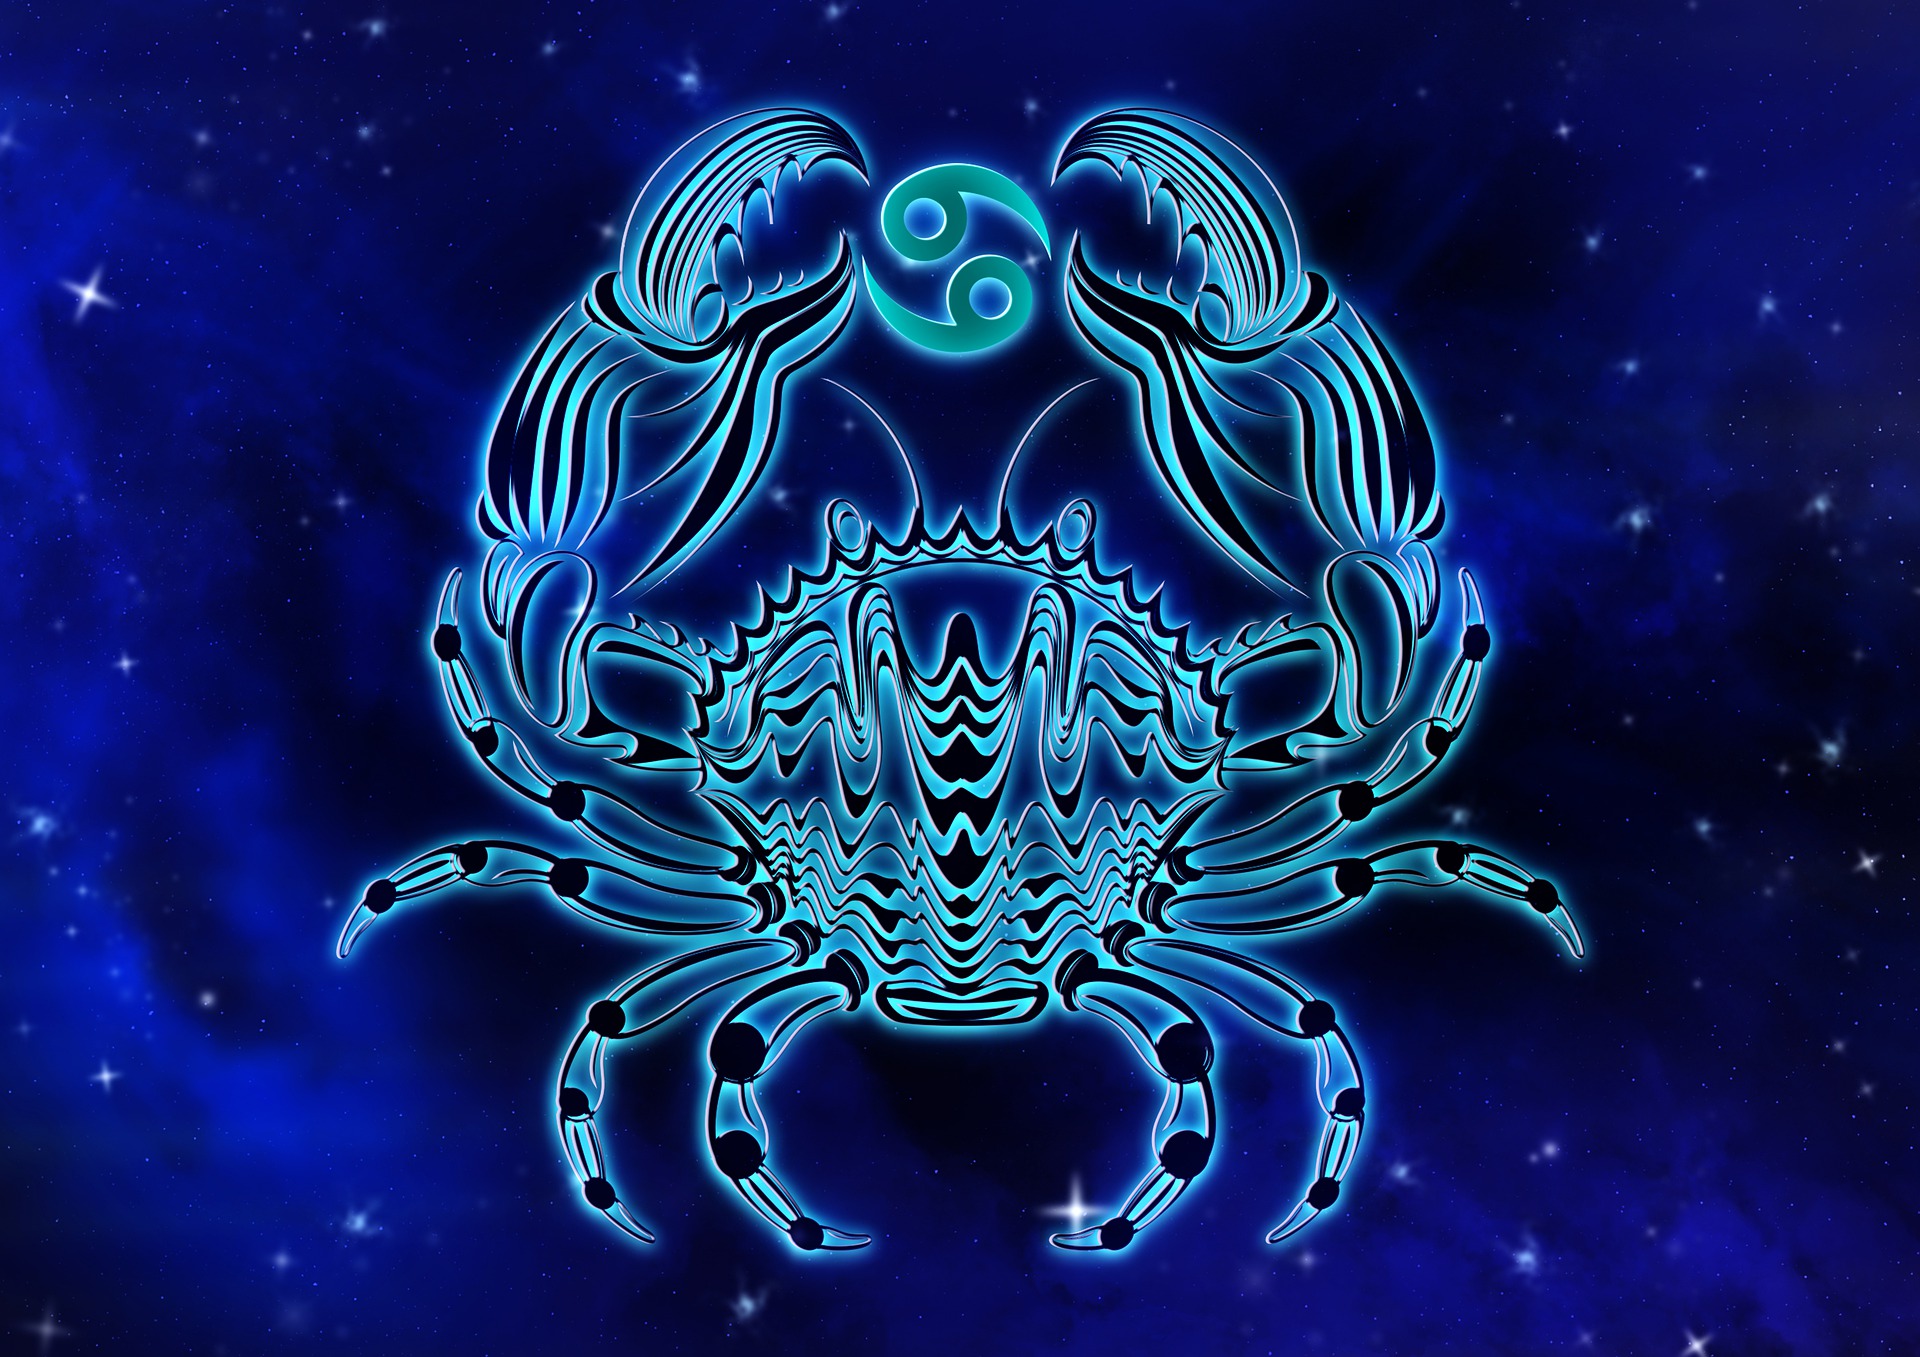 Blue Cancer the Crab by DarkWorkX